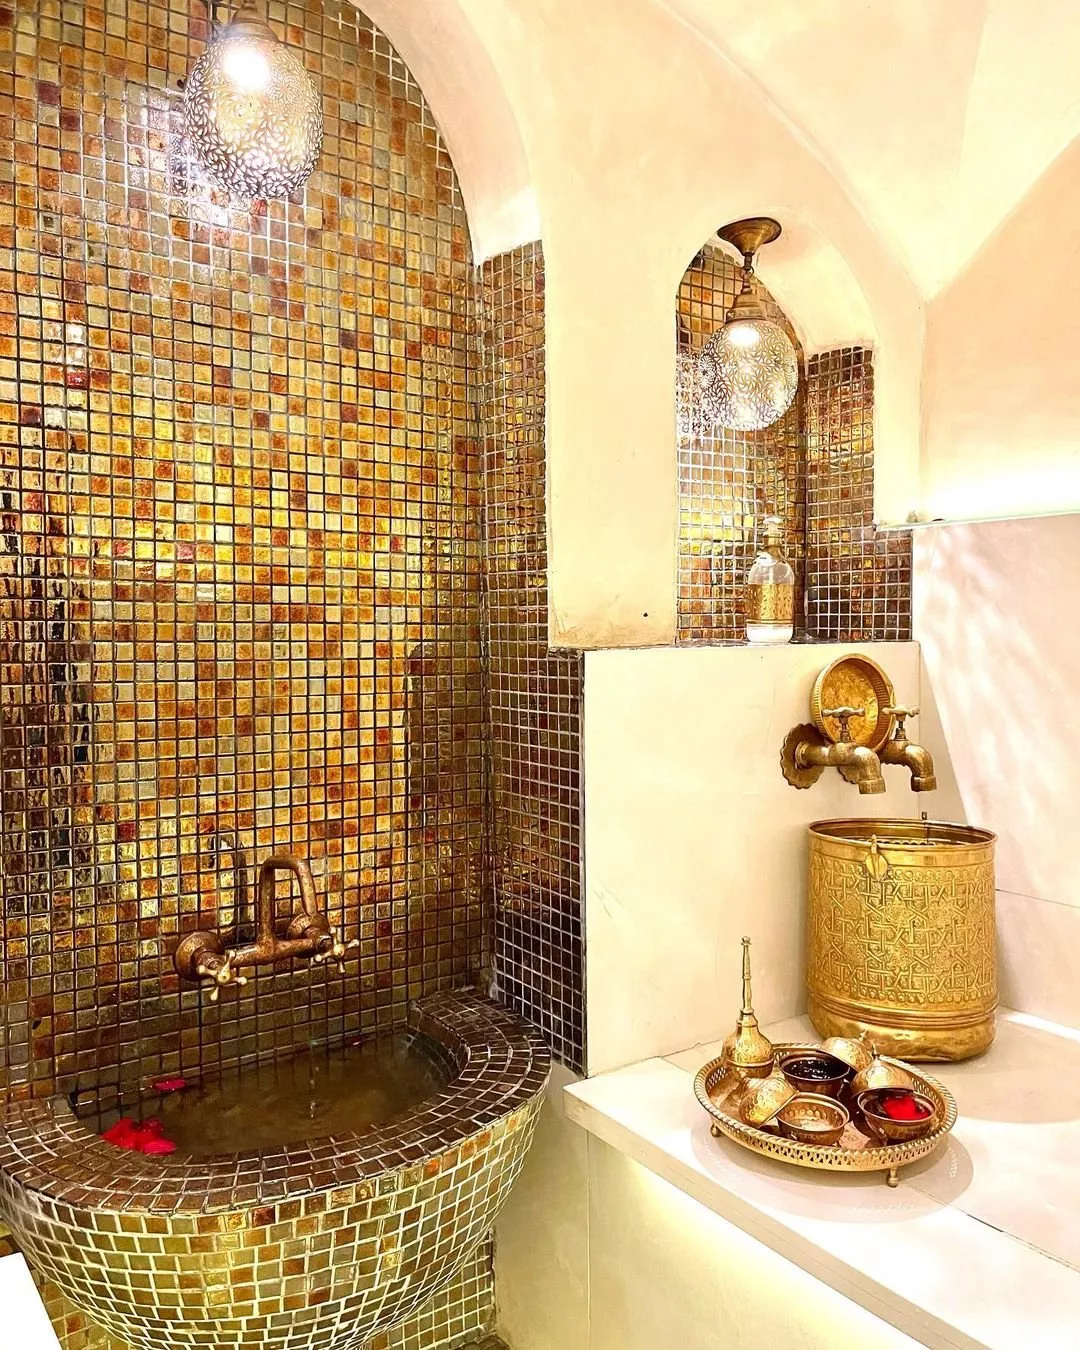 فوائد الحمام المغربي: منافع جمالية وصحية في الوقت نفسه